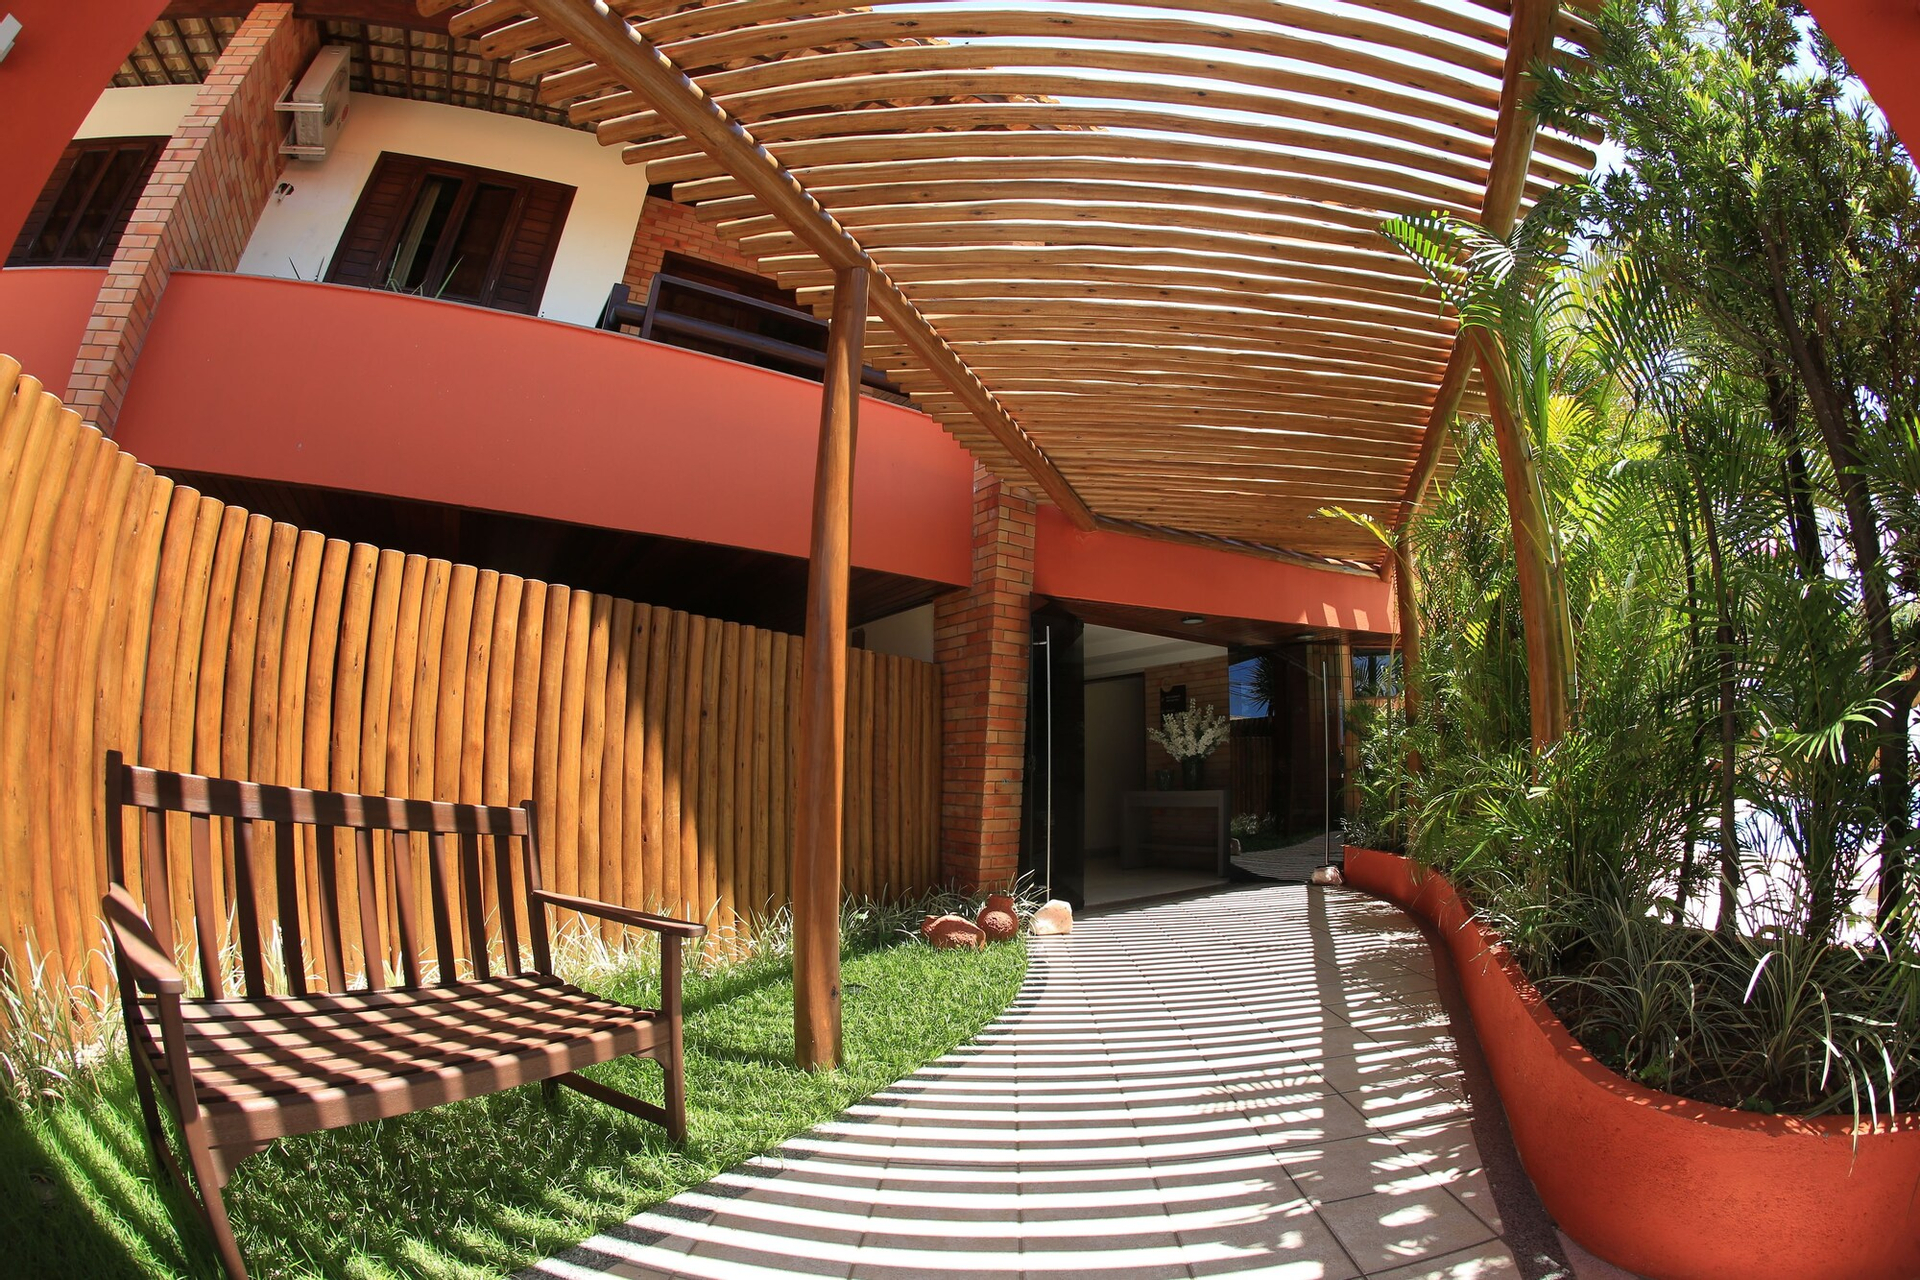 Exterior & Views 2, Soleil Garbos Hotel, Natal